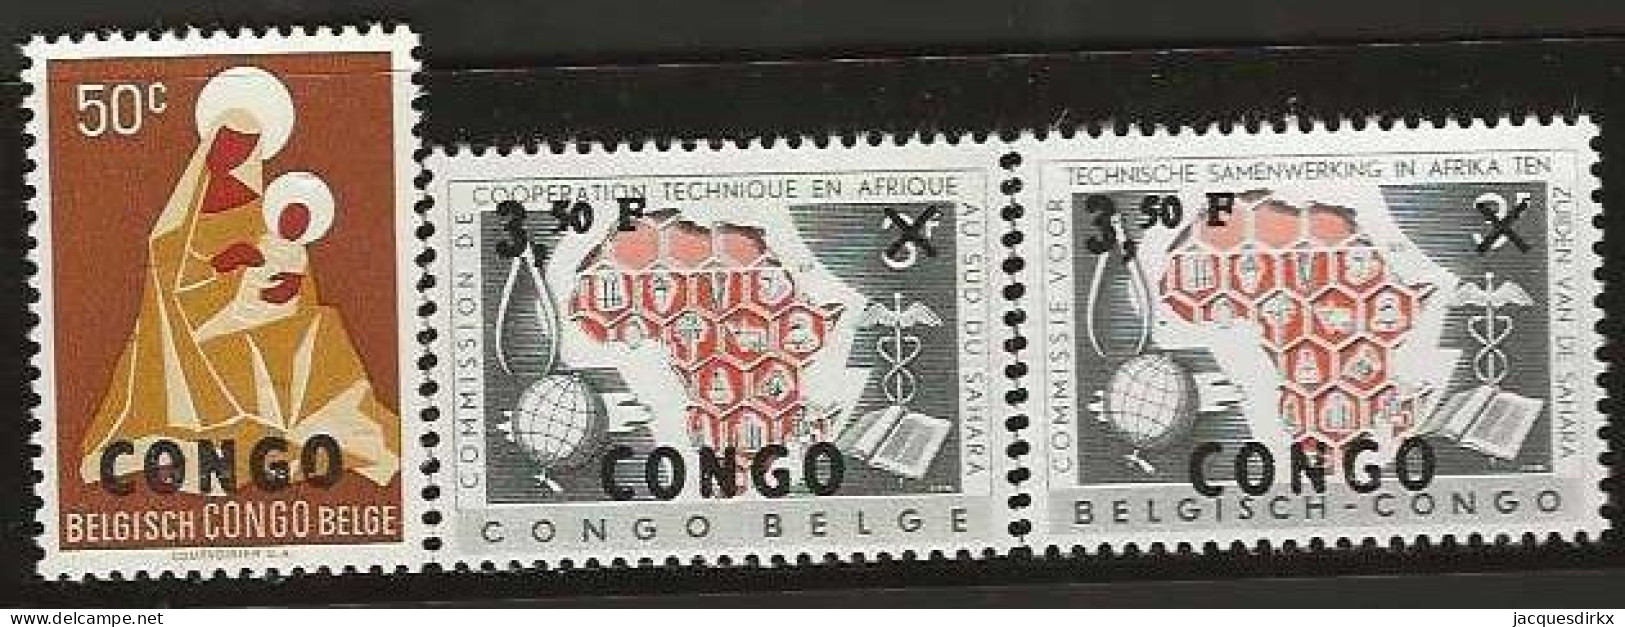 Republique Congo   .   OBP    .    412/414   .    **      .  Postfris  .   /   .   Neuf Avec Gomme Et SANS Charnière - Unused Stamps